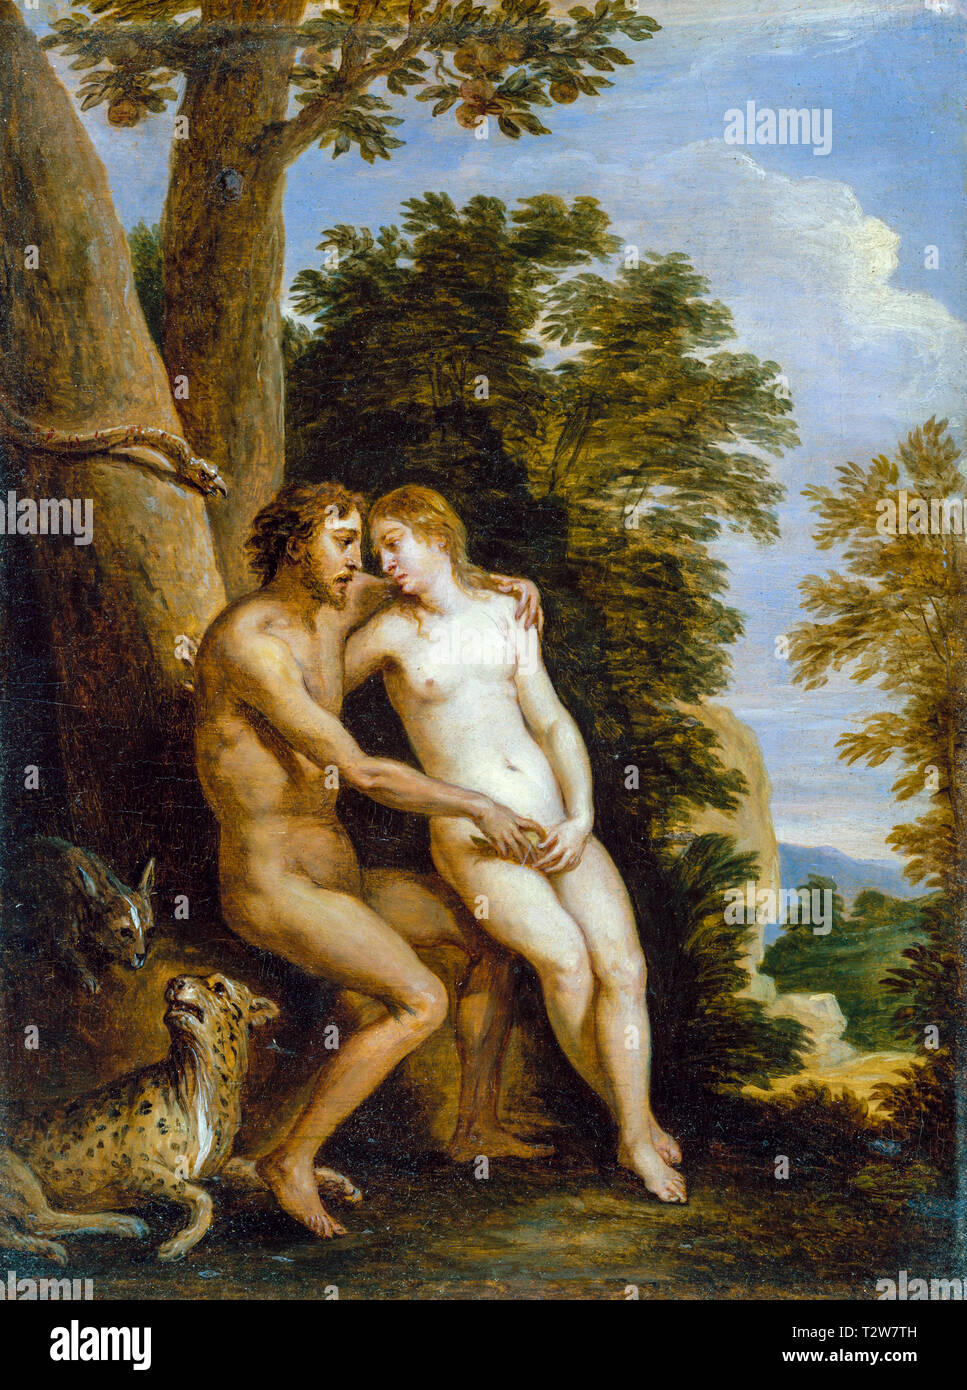 Adam und Eva im Paradies, Gemälde von David Teniers dem Jüngeren, um 1650 Stockfoto